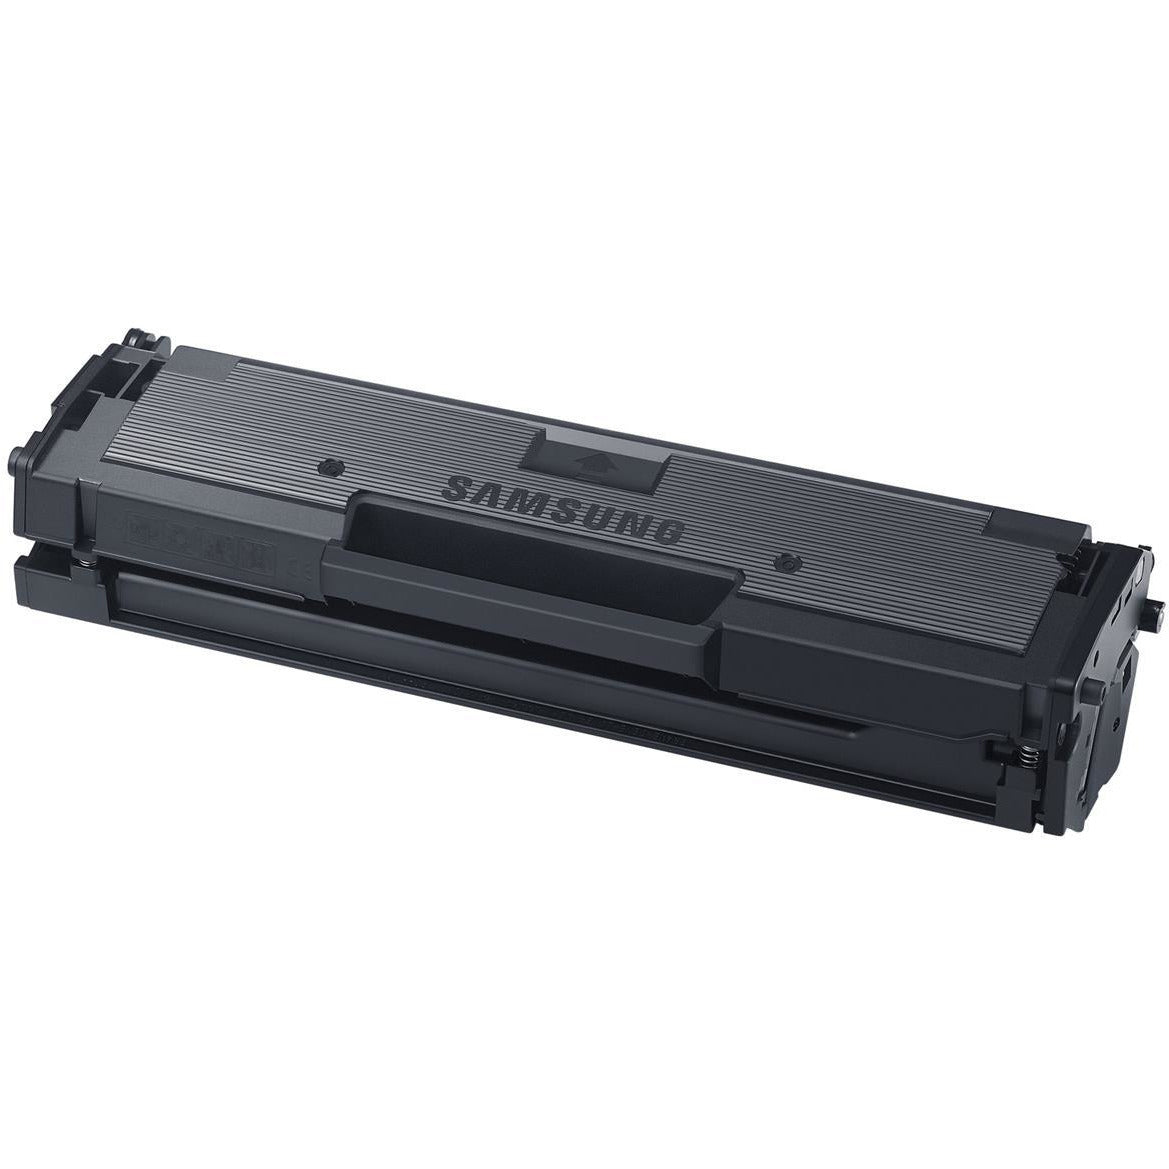 Samsung MLT-D111S (prentar 1000 síður) svart dufthylki fyrir Xpress M2022 Series/M2070 Series/M2020 Series Laser Printers